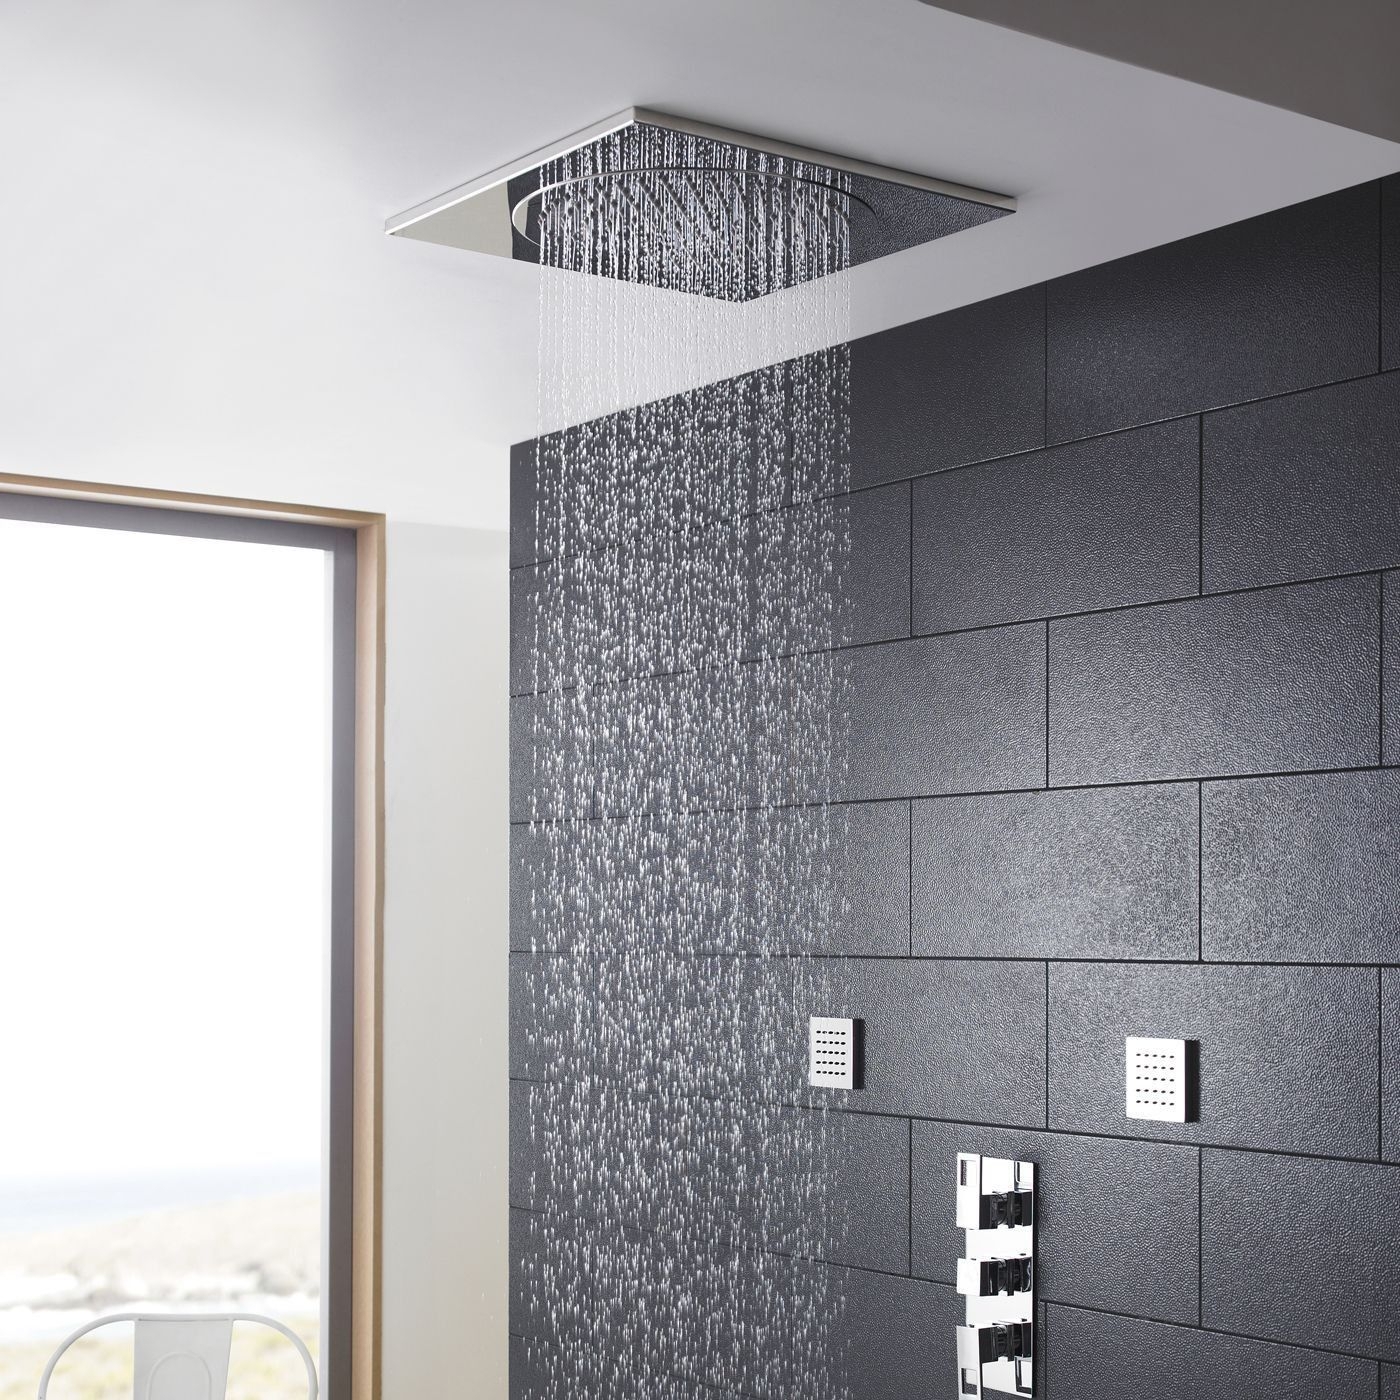 Ceiling Tile Rain Shower Head Ceiling Tile Rain Shower Head ceiling tile rain shower head ceiling tiles 1400 X 1400